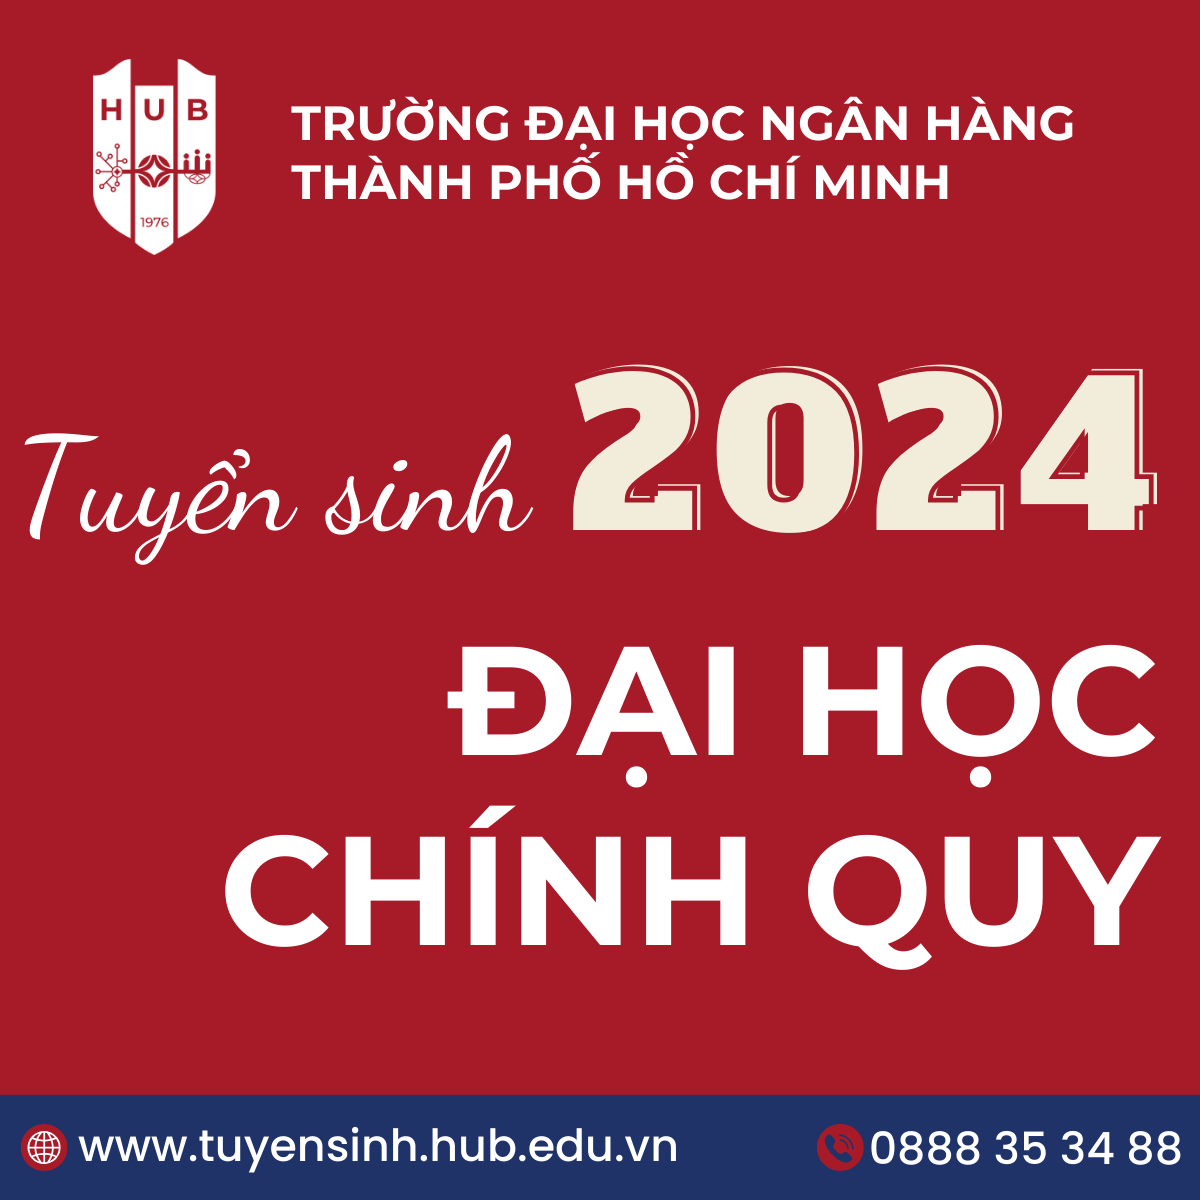 thong-tin-tuyen-sinh-dai-hoc-chinh-quy-nam-2024-truong-dai-hoc-ngan-hang-tp.-ho-chi-minh--du-kien-